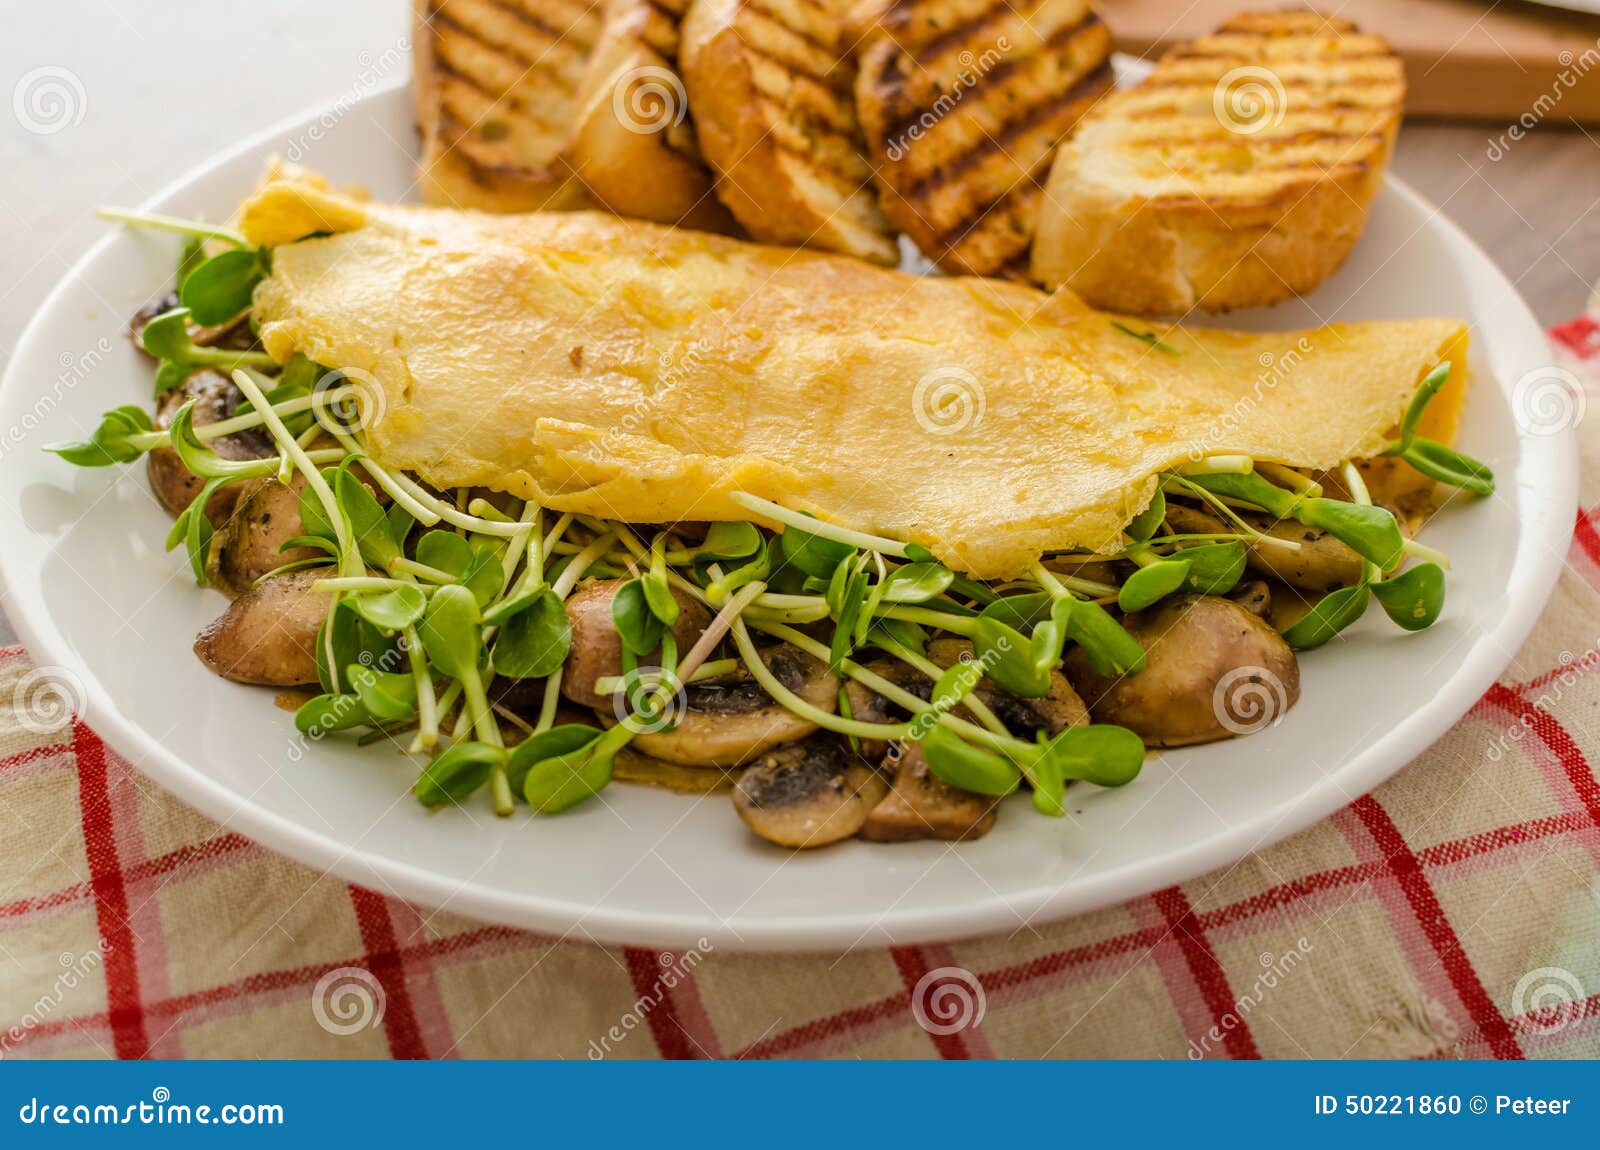 煎蛋卷用蘑菇和橄榄 库存照片. 图片 包括有 牌照, 健康, 蔬菜, 绿色, 蘑菇, 可口, 菜单, 新鲜 - 61853184